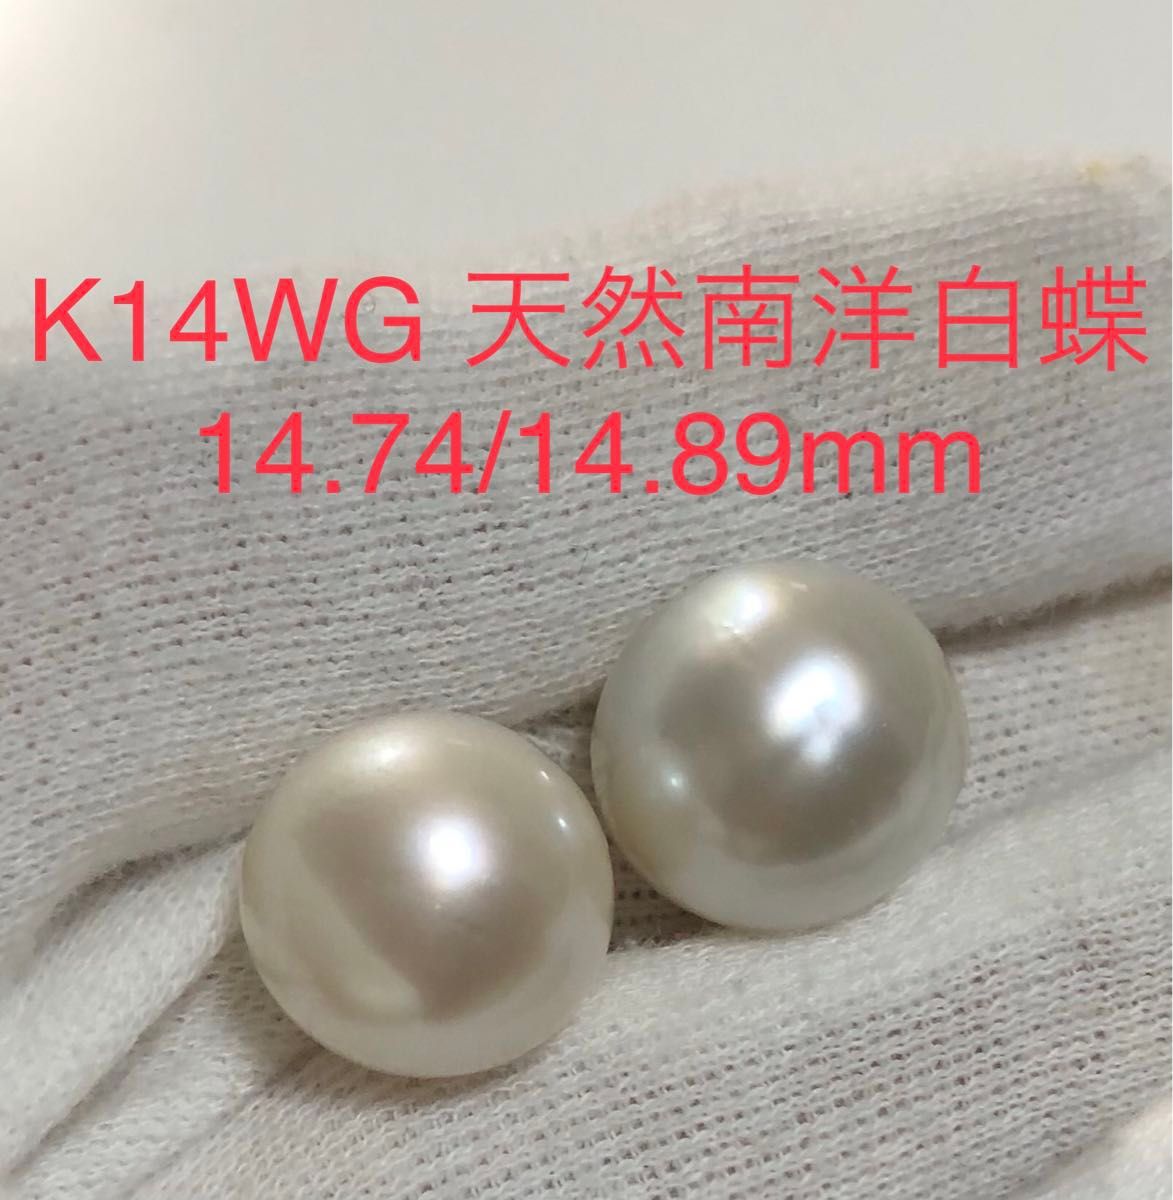 K14WG 天然南洋白蝶真珠　丸系ピアス　14.74/14.89mm